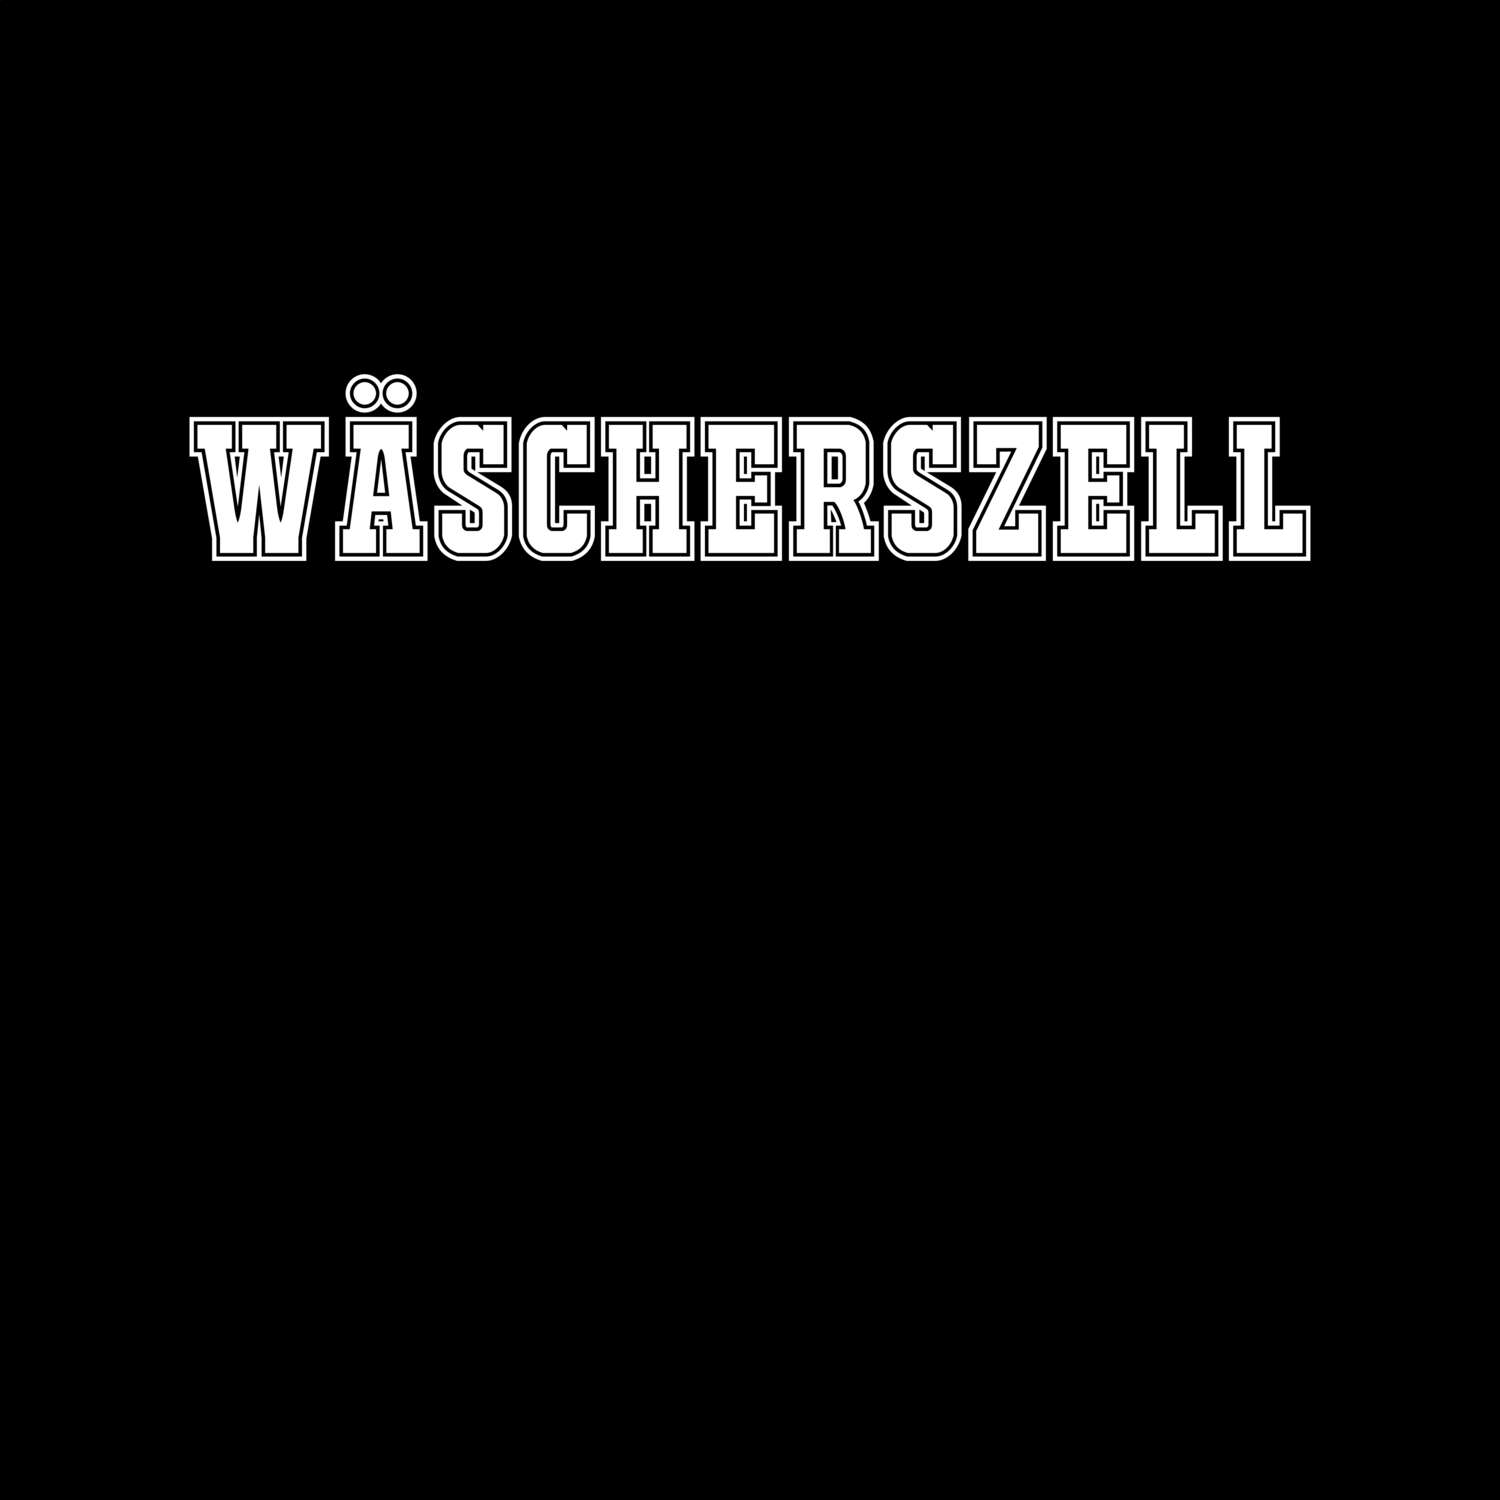 Wäscherszell T-Shirt »Classic«